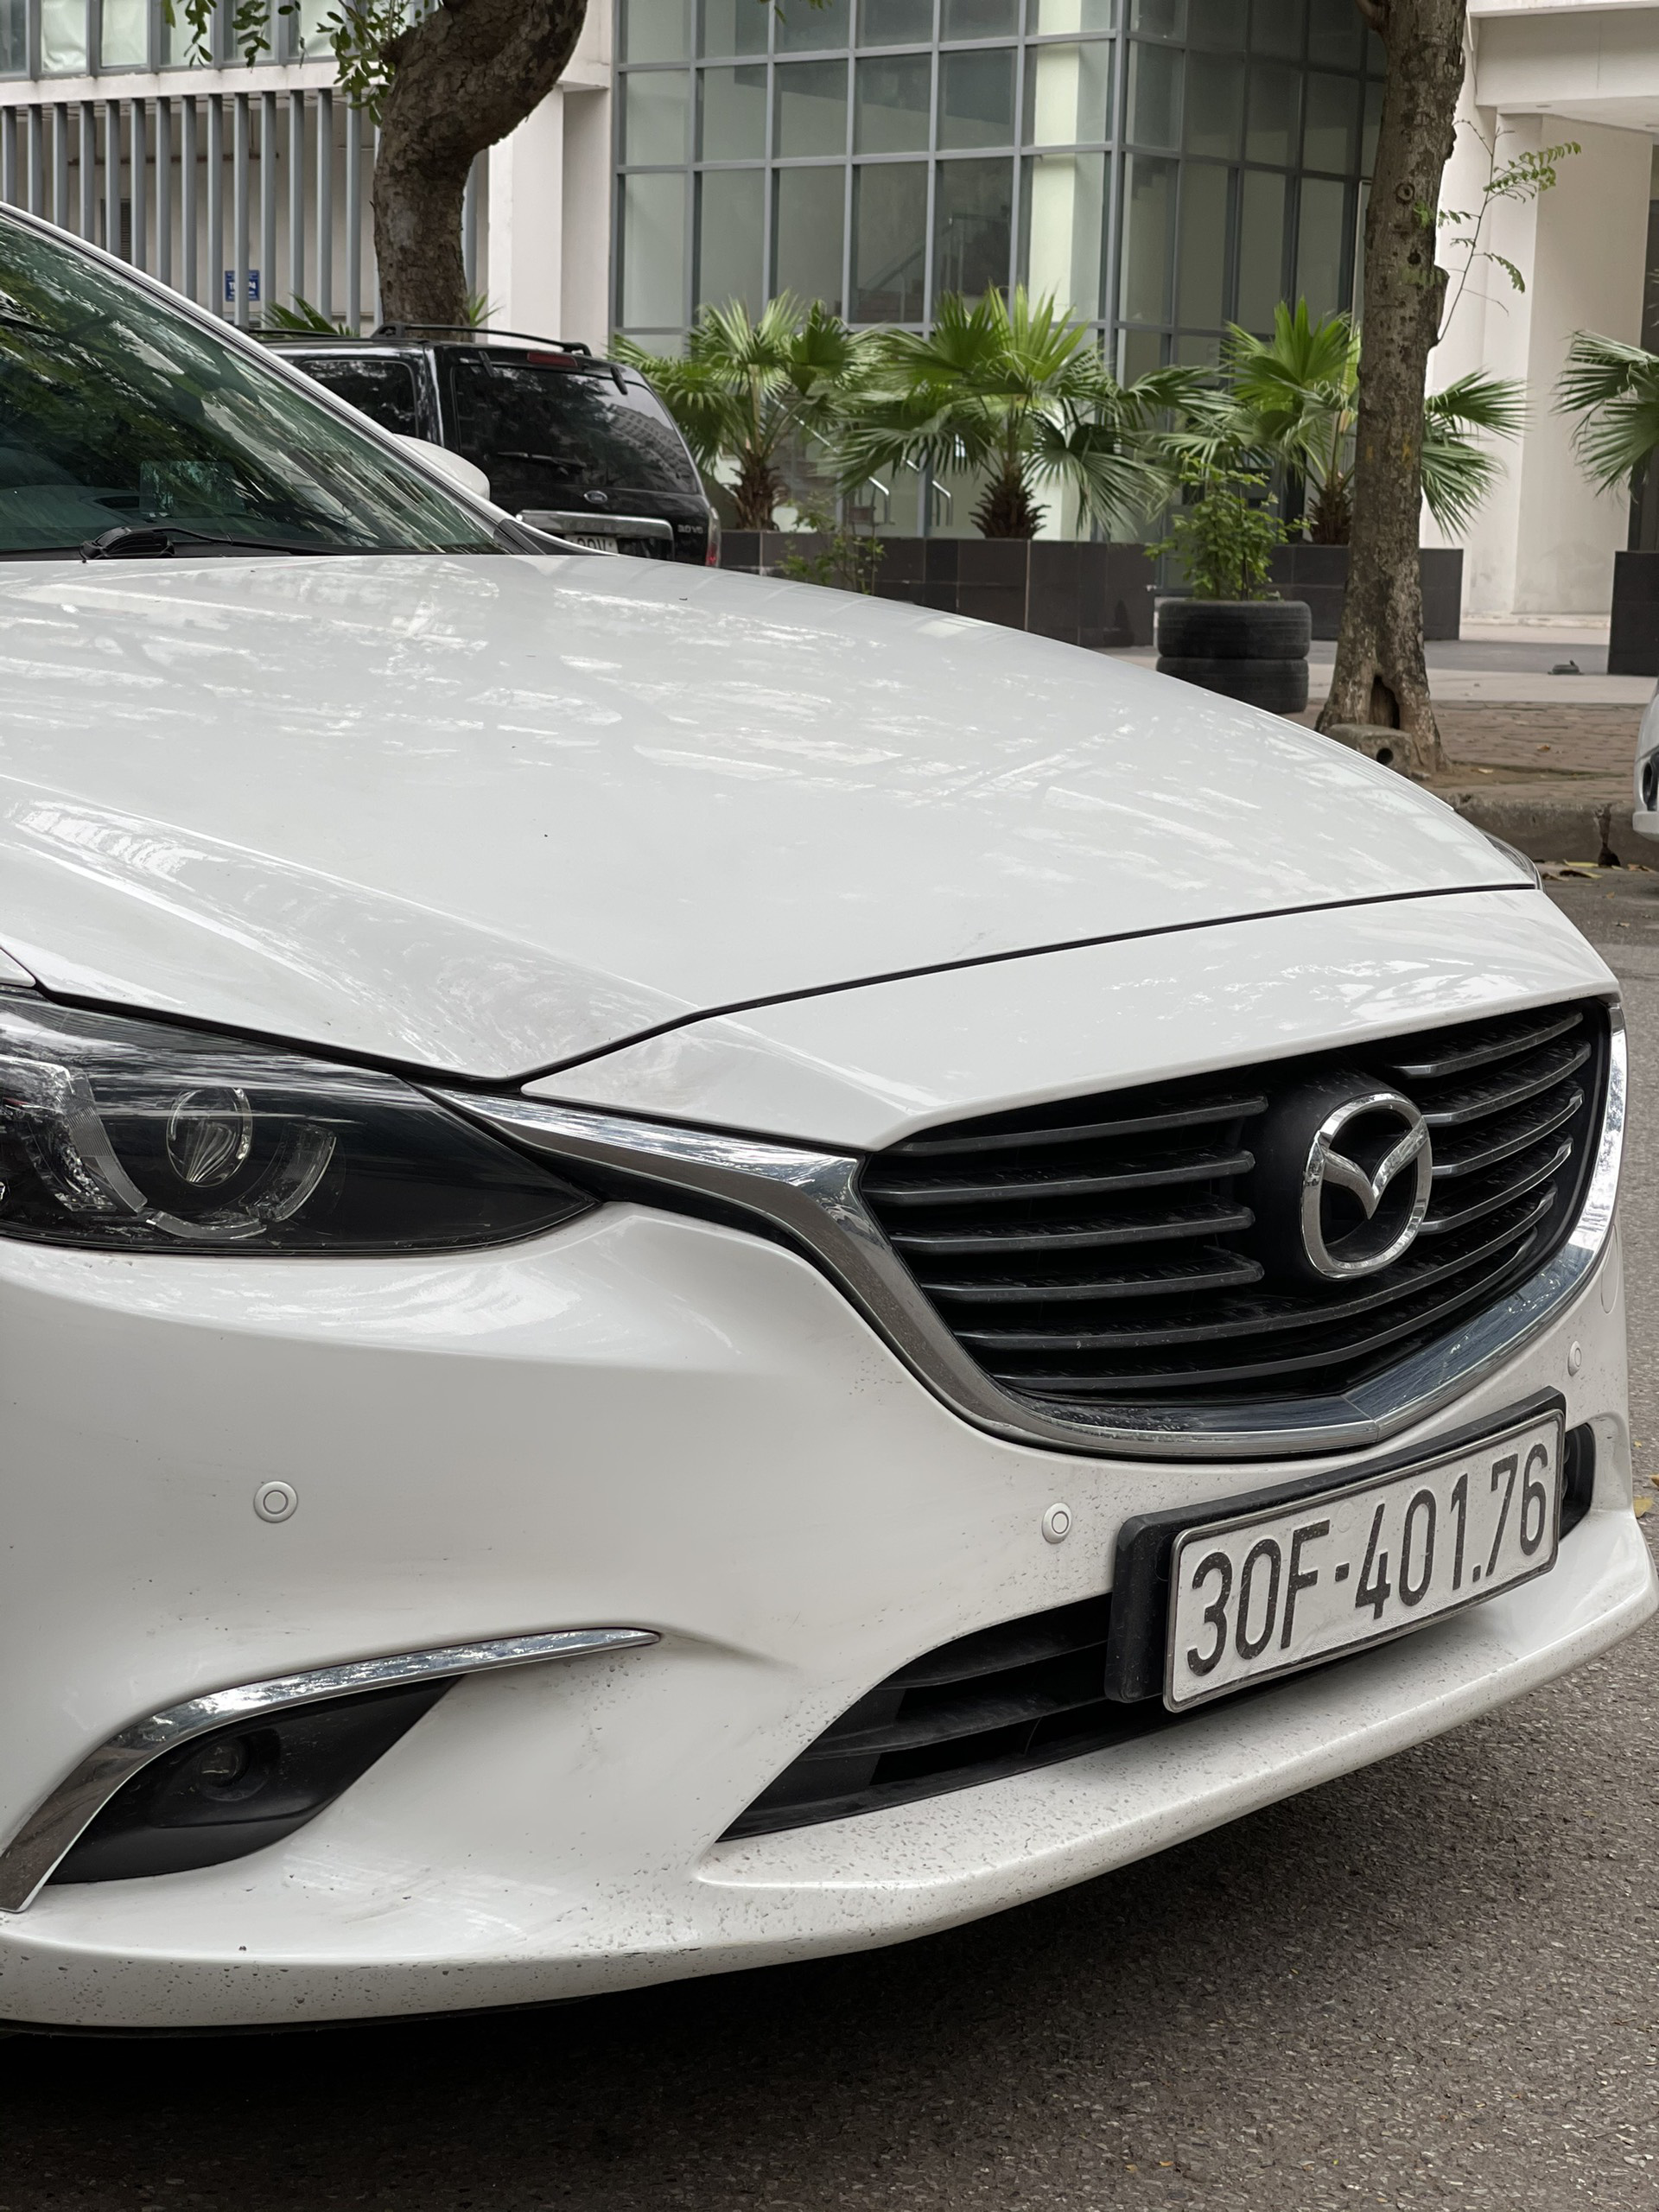 Triệu hồi 61.517 xe Mazda bán tại Việt Nam do lỗi bơm nhiên liệu